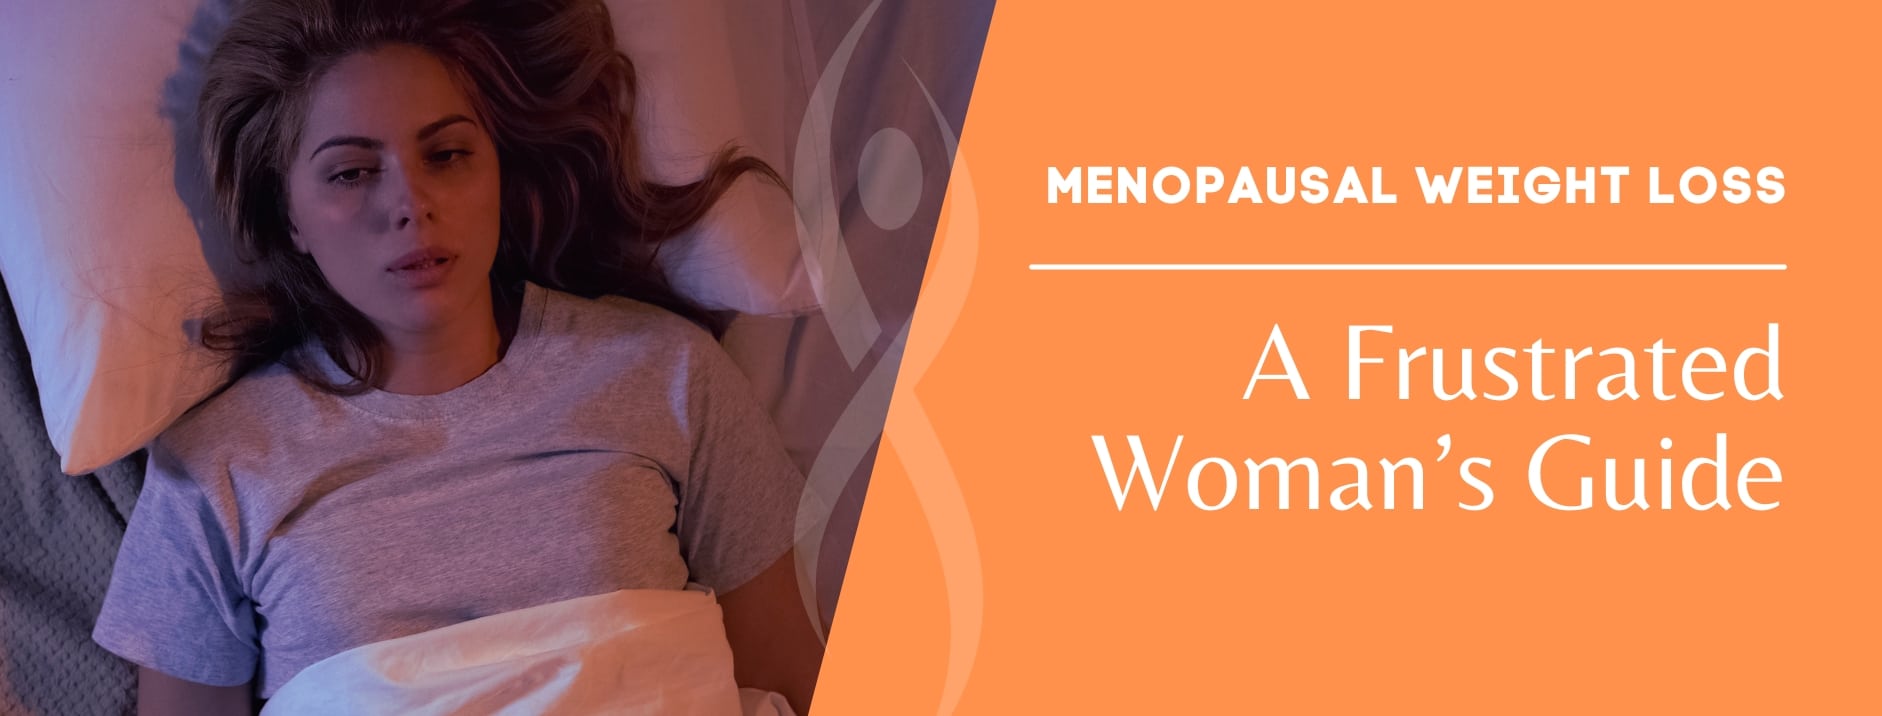 Menopausal Weight Loss